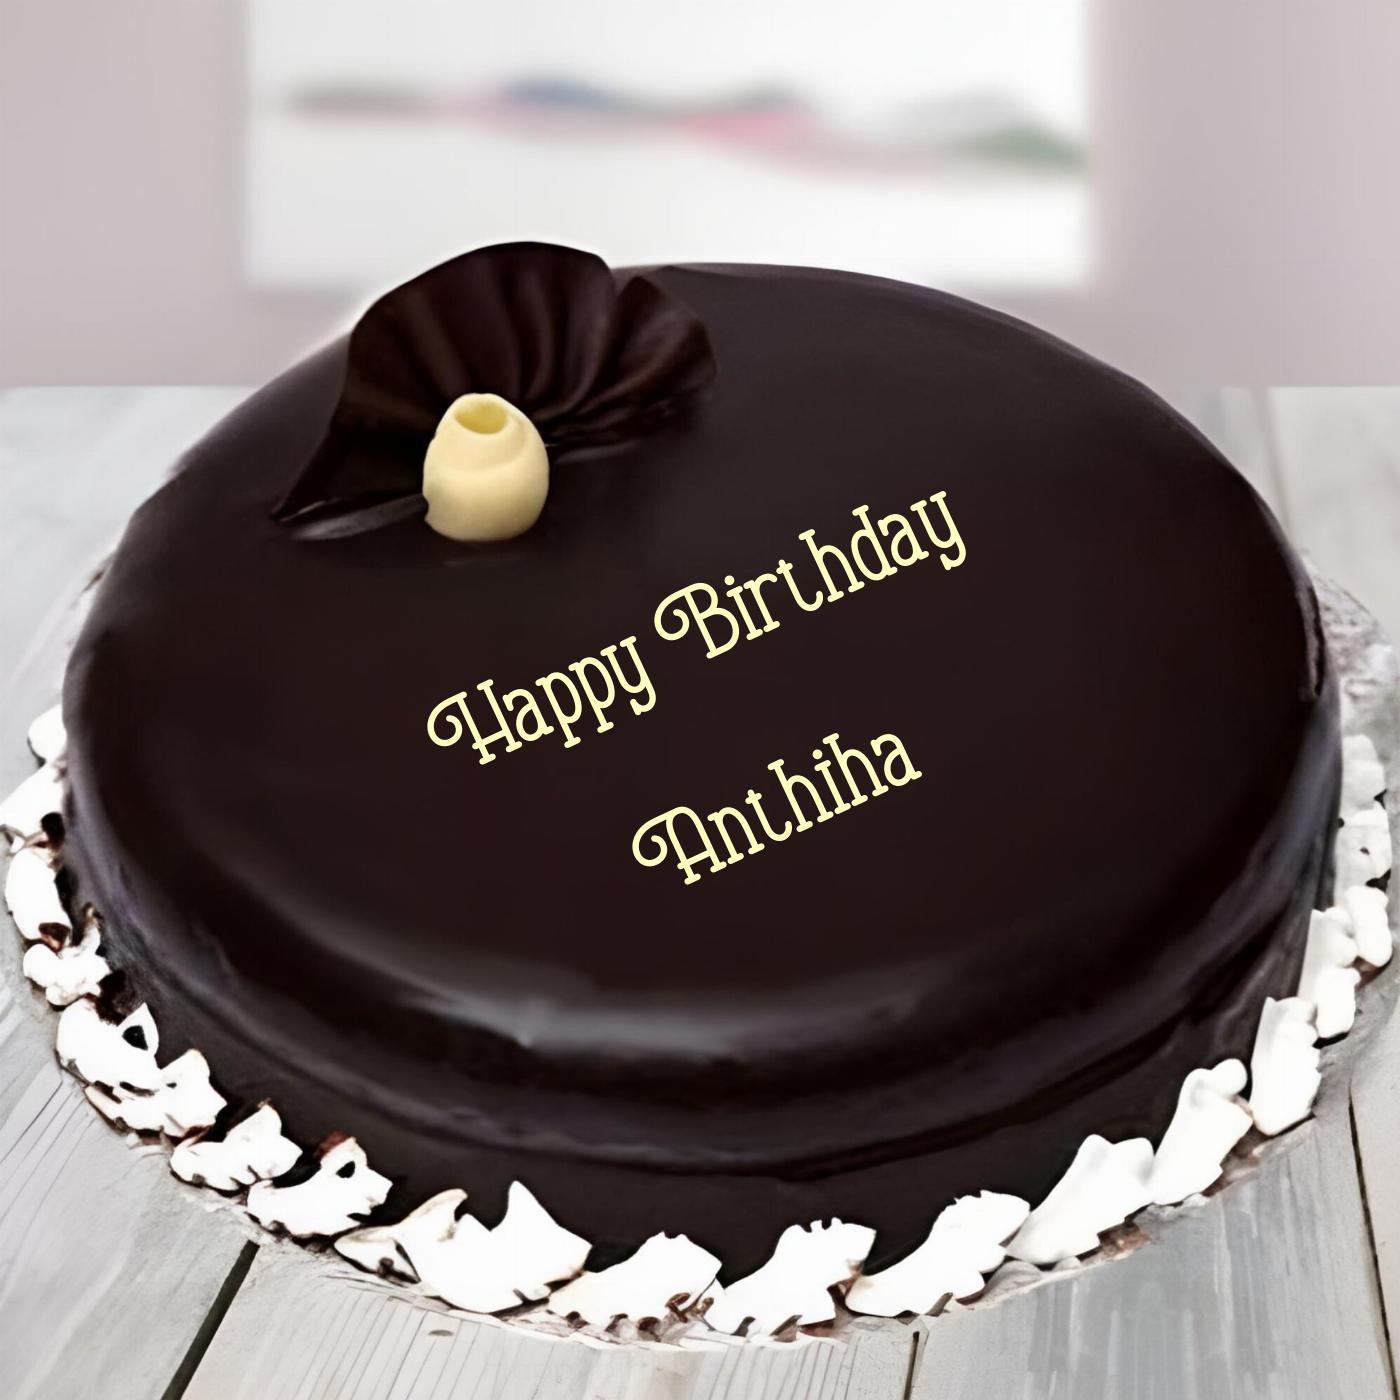 Happy Birthday Anthiha Beautiful Chocolate Cake